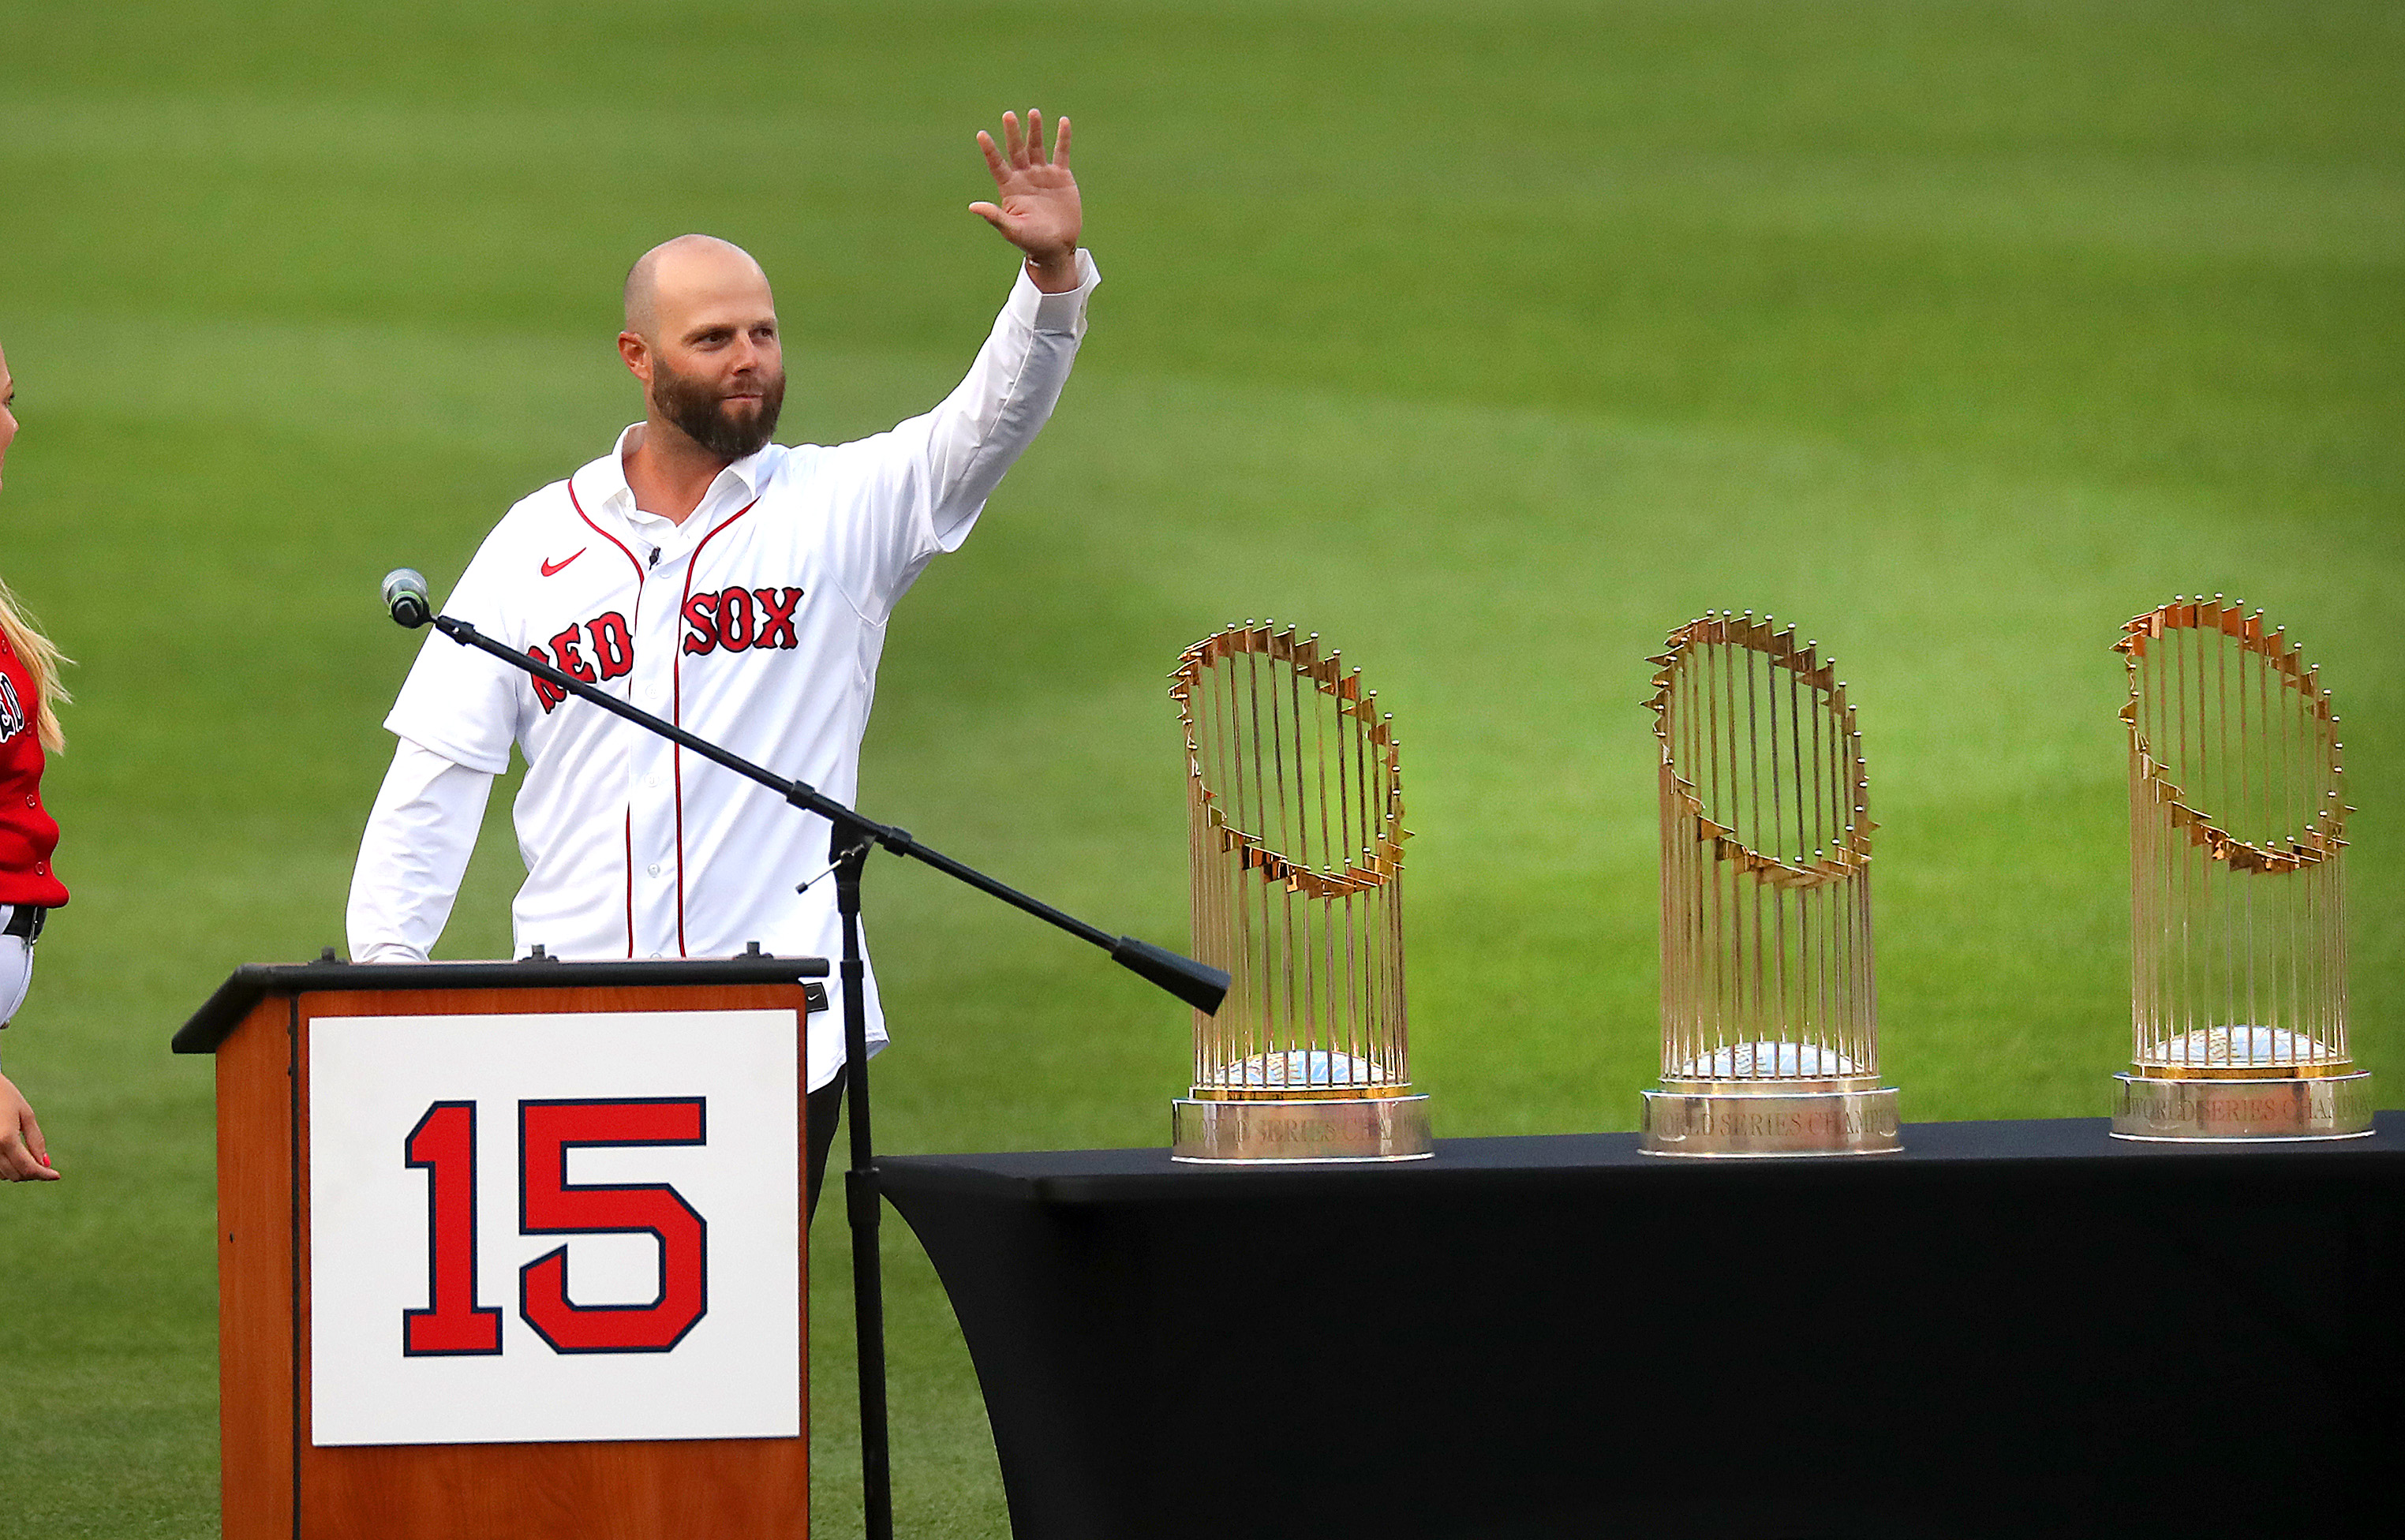 Boston Red Sox standout Dustin Pedroia announces retirement